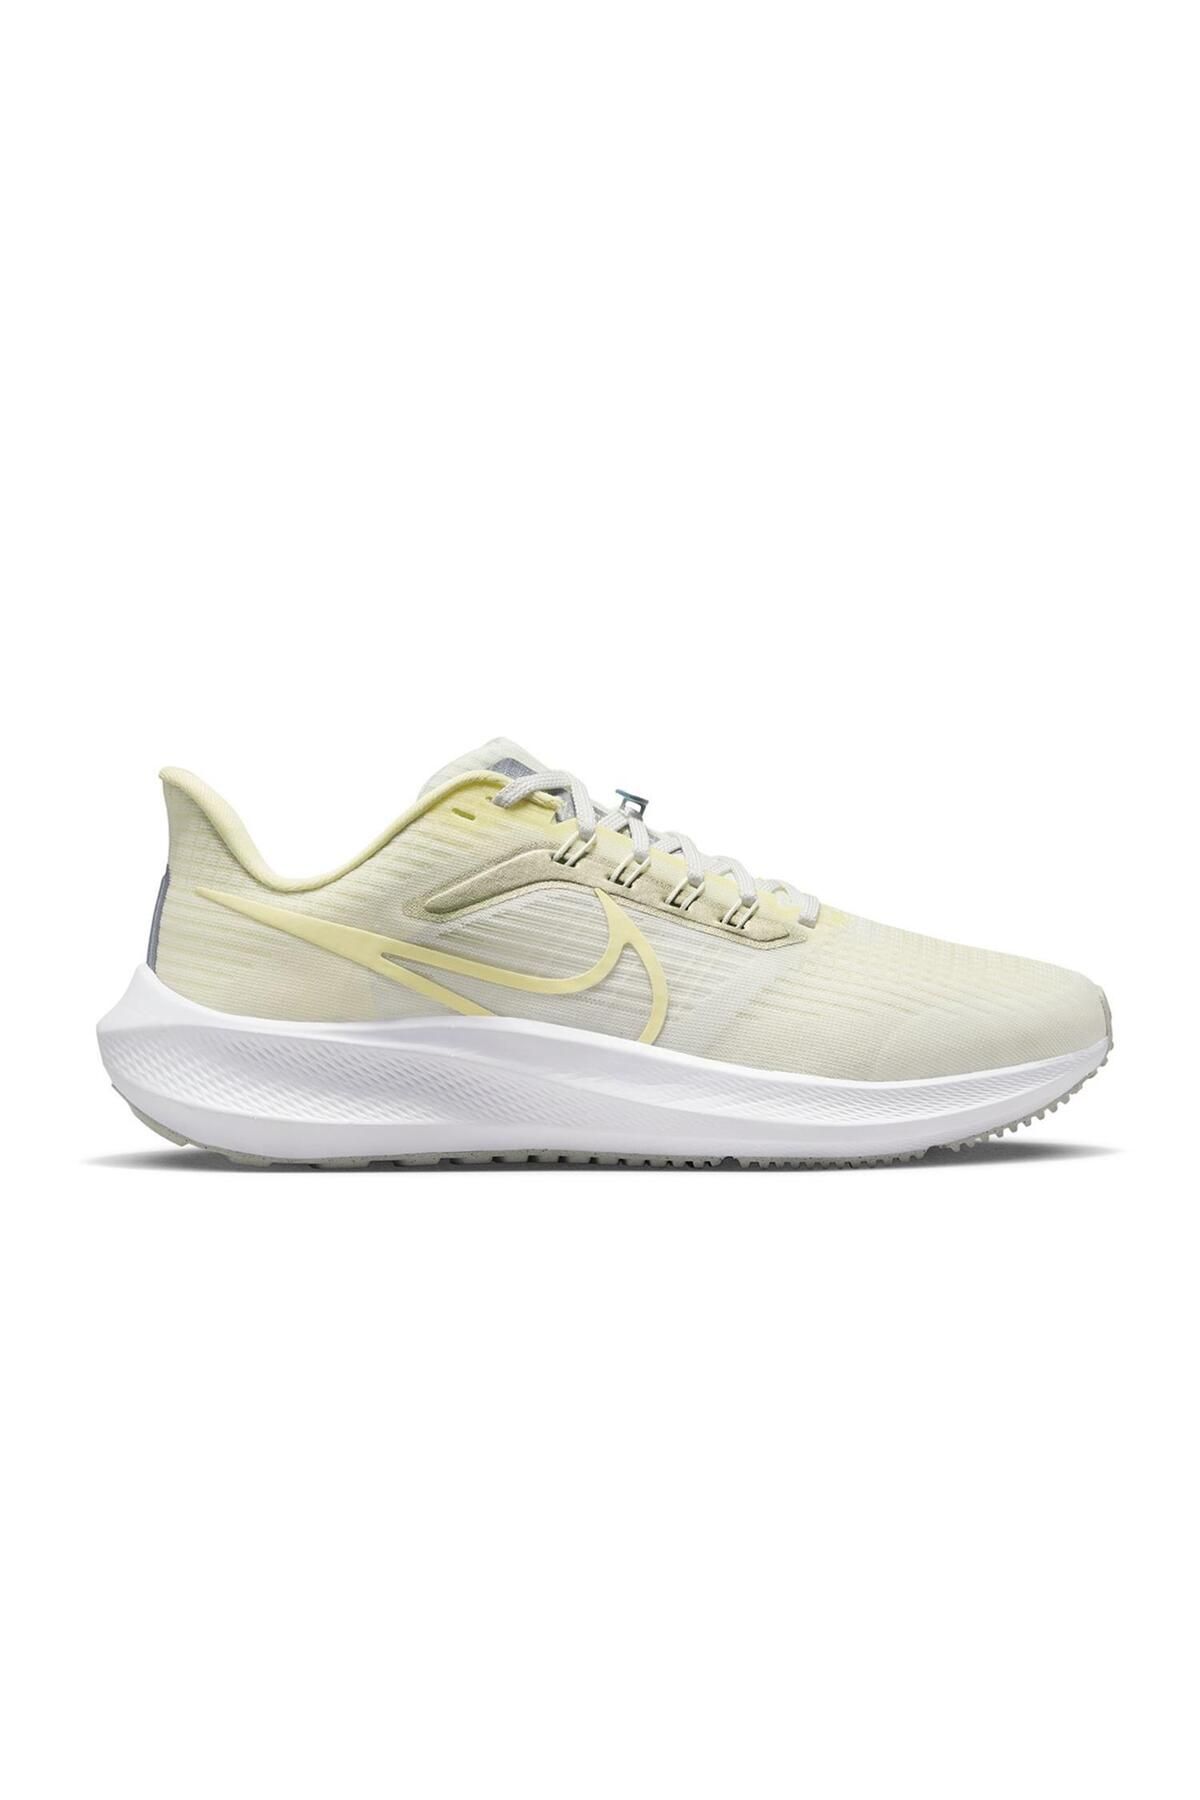 Nike Pegasus 39 Kadın Yol Koşu Antreman Ayakkabı Soft Limon Sarı Beyaz FD0796-100